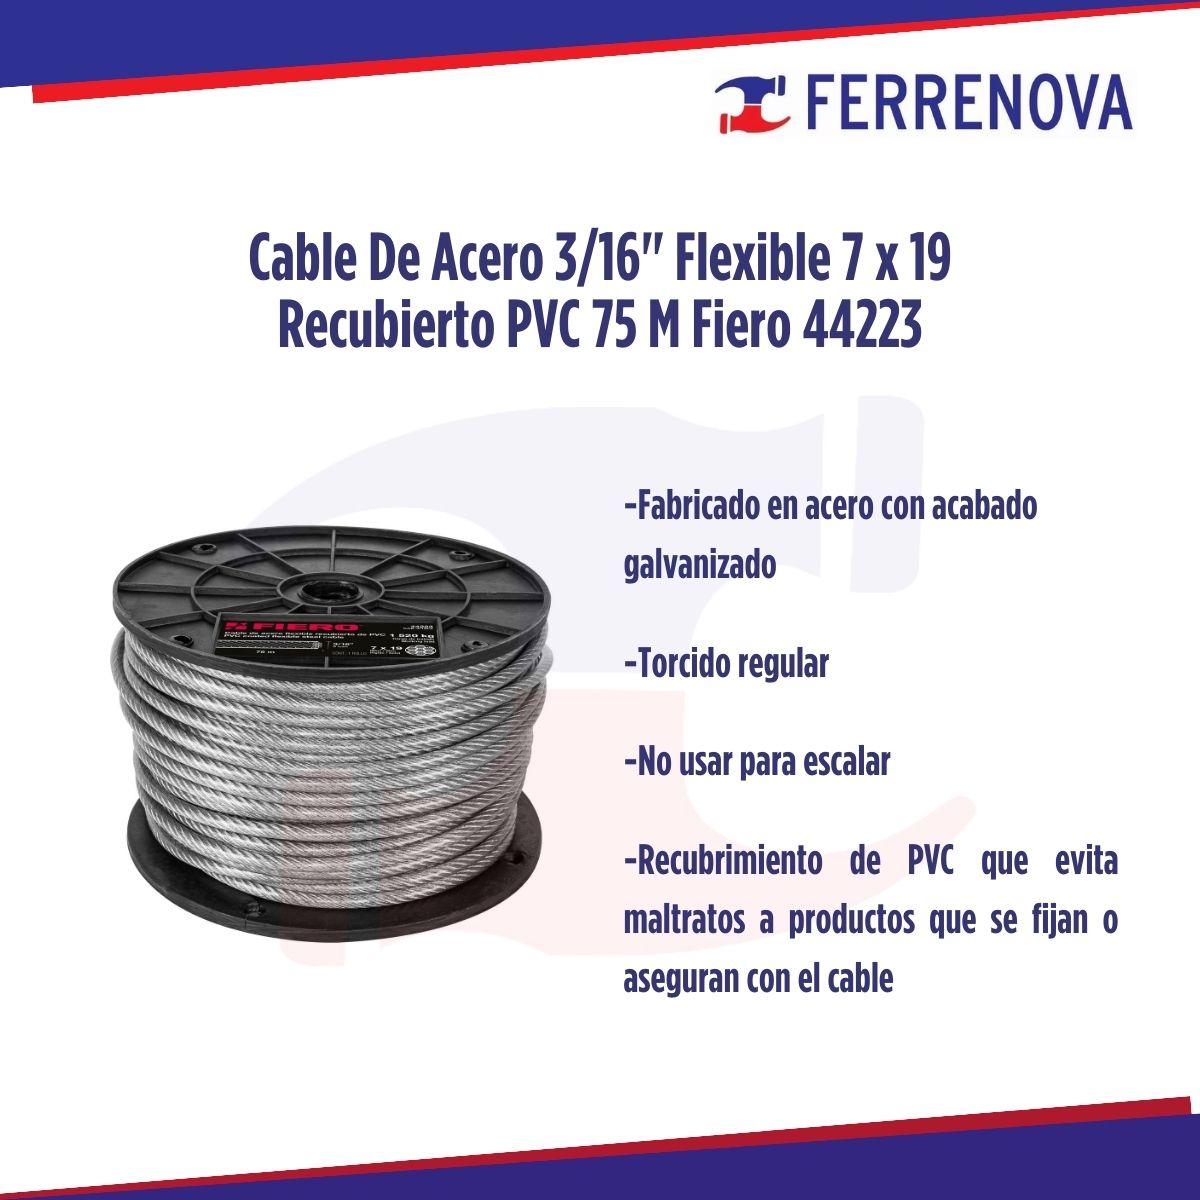 Cable De Acero 3/16" Flexible 7x19 Recubierto PVC 75 M Fiero 44223